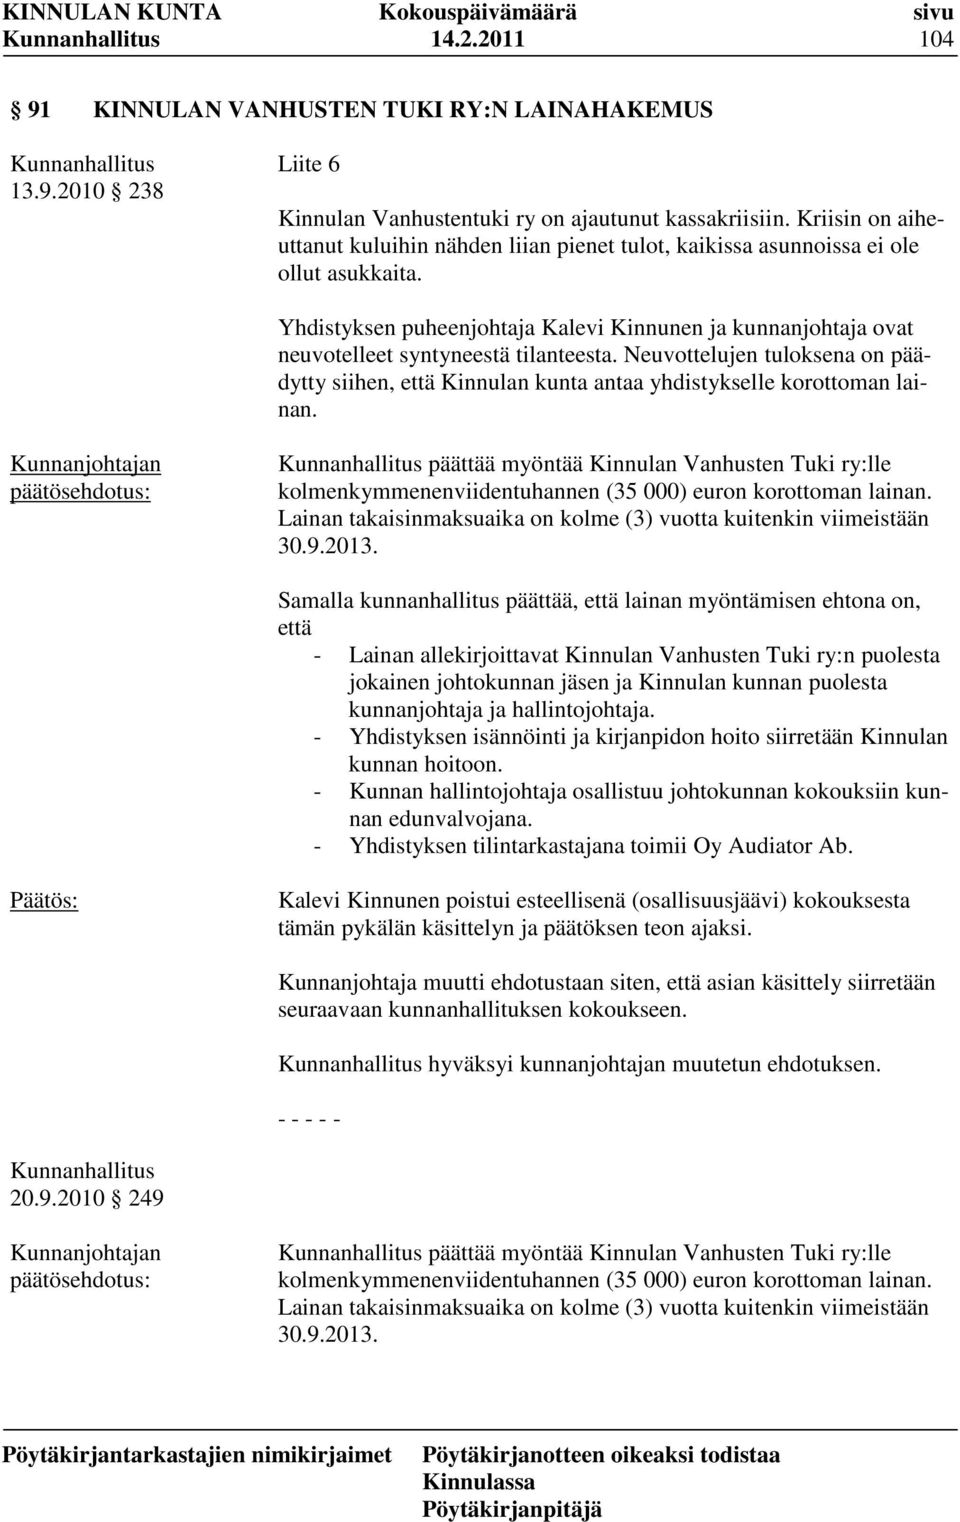 Yhdistyksen puheenjohtaja Kalevi Kinnunen ja kunnanjohtaja ovat neuvotelleet syntyneestä tilanteesta.